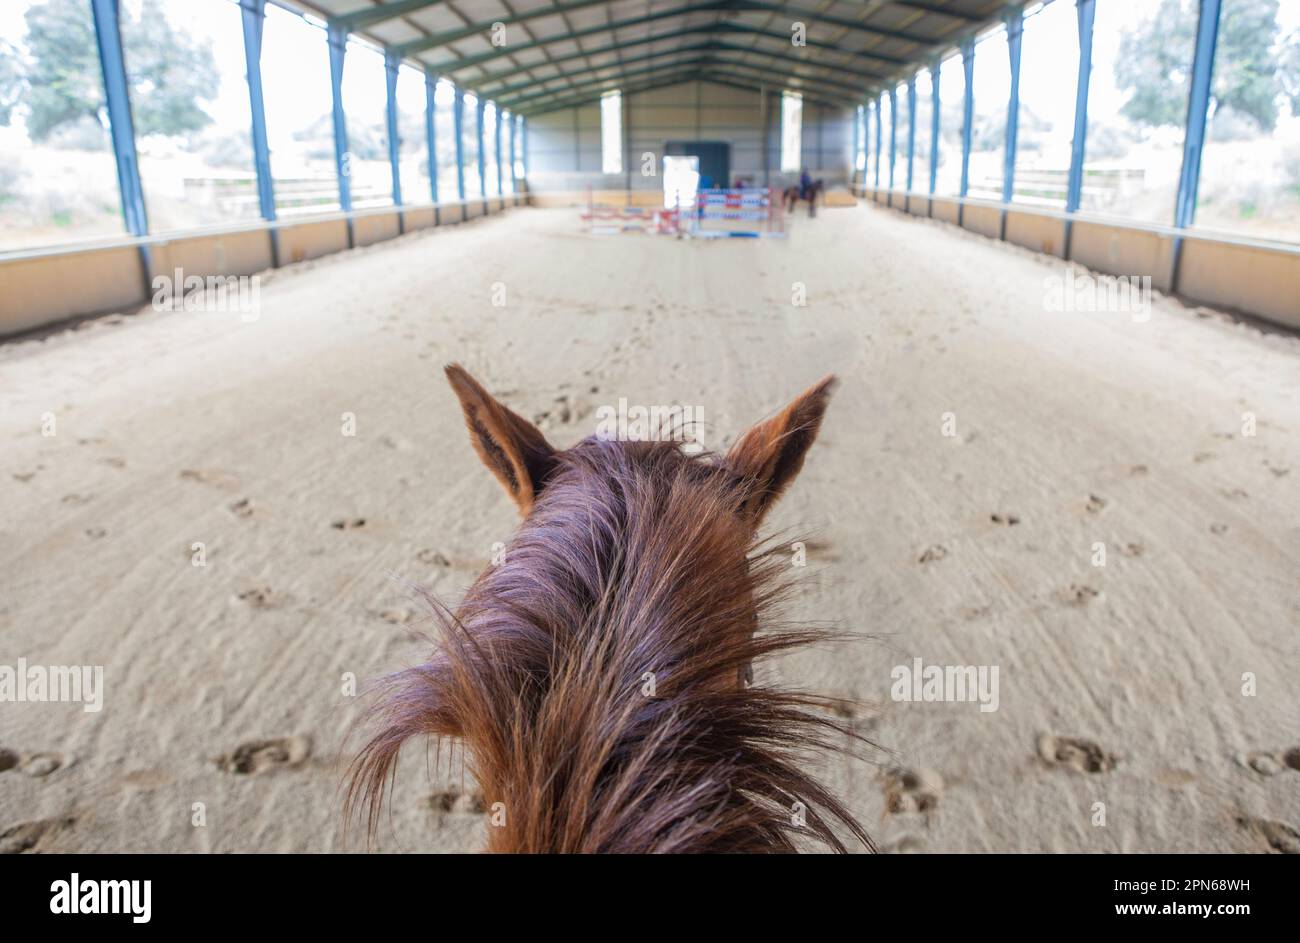 Formation de chevaux sur le parcours d'obstacles intérieur. Scène vue à cheval Banque D'Images